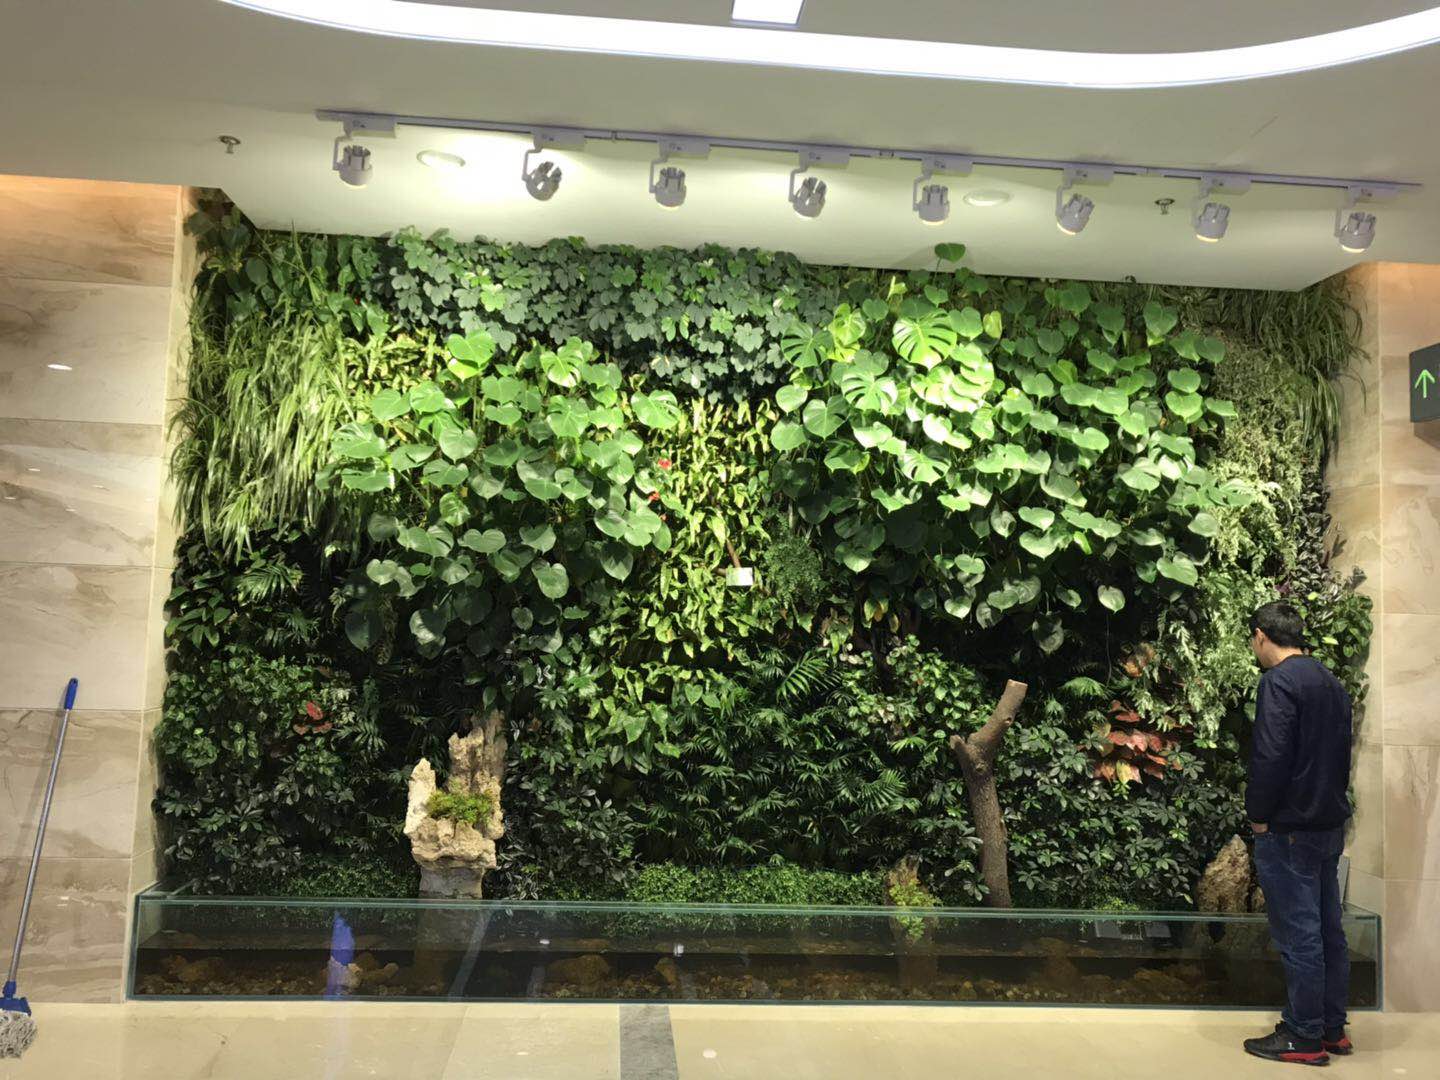 重庆植物墙定制重庆仿真植物墙制作重庆假花墙制作重庆装饰植物墙